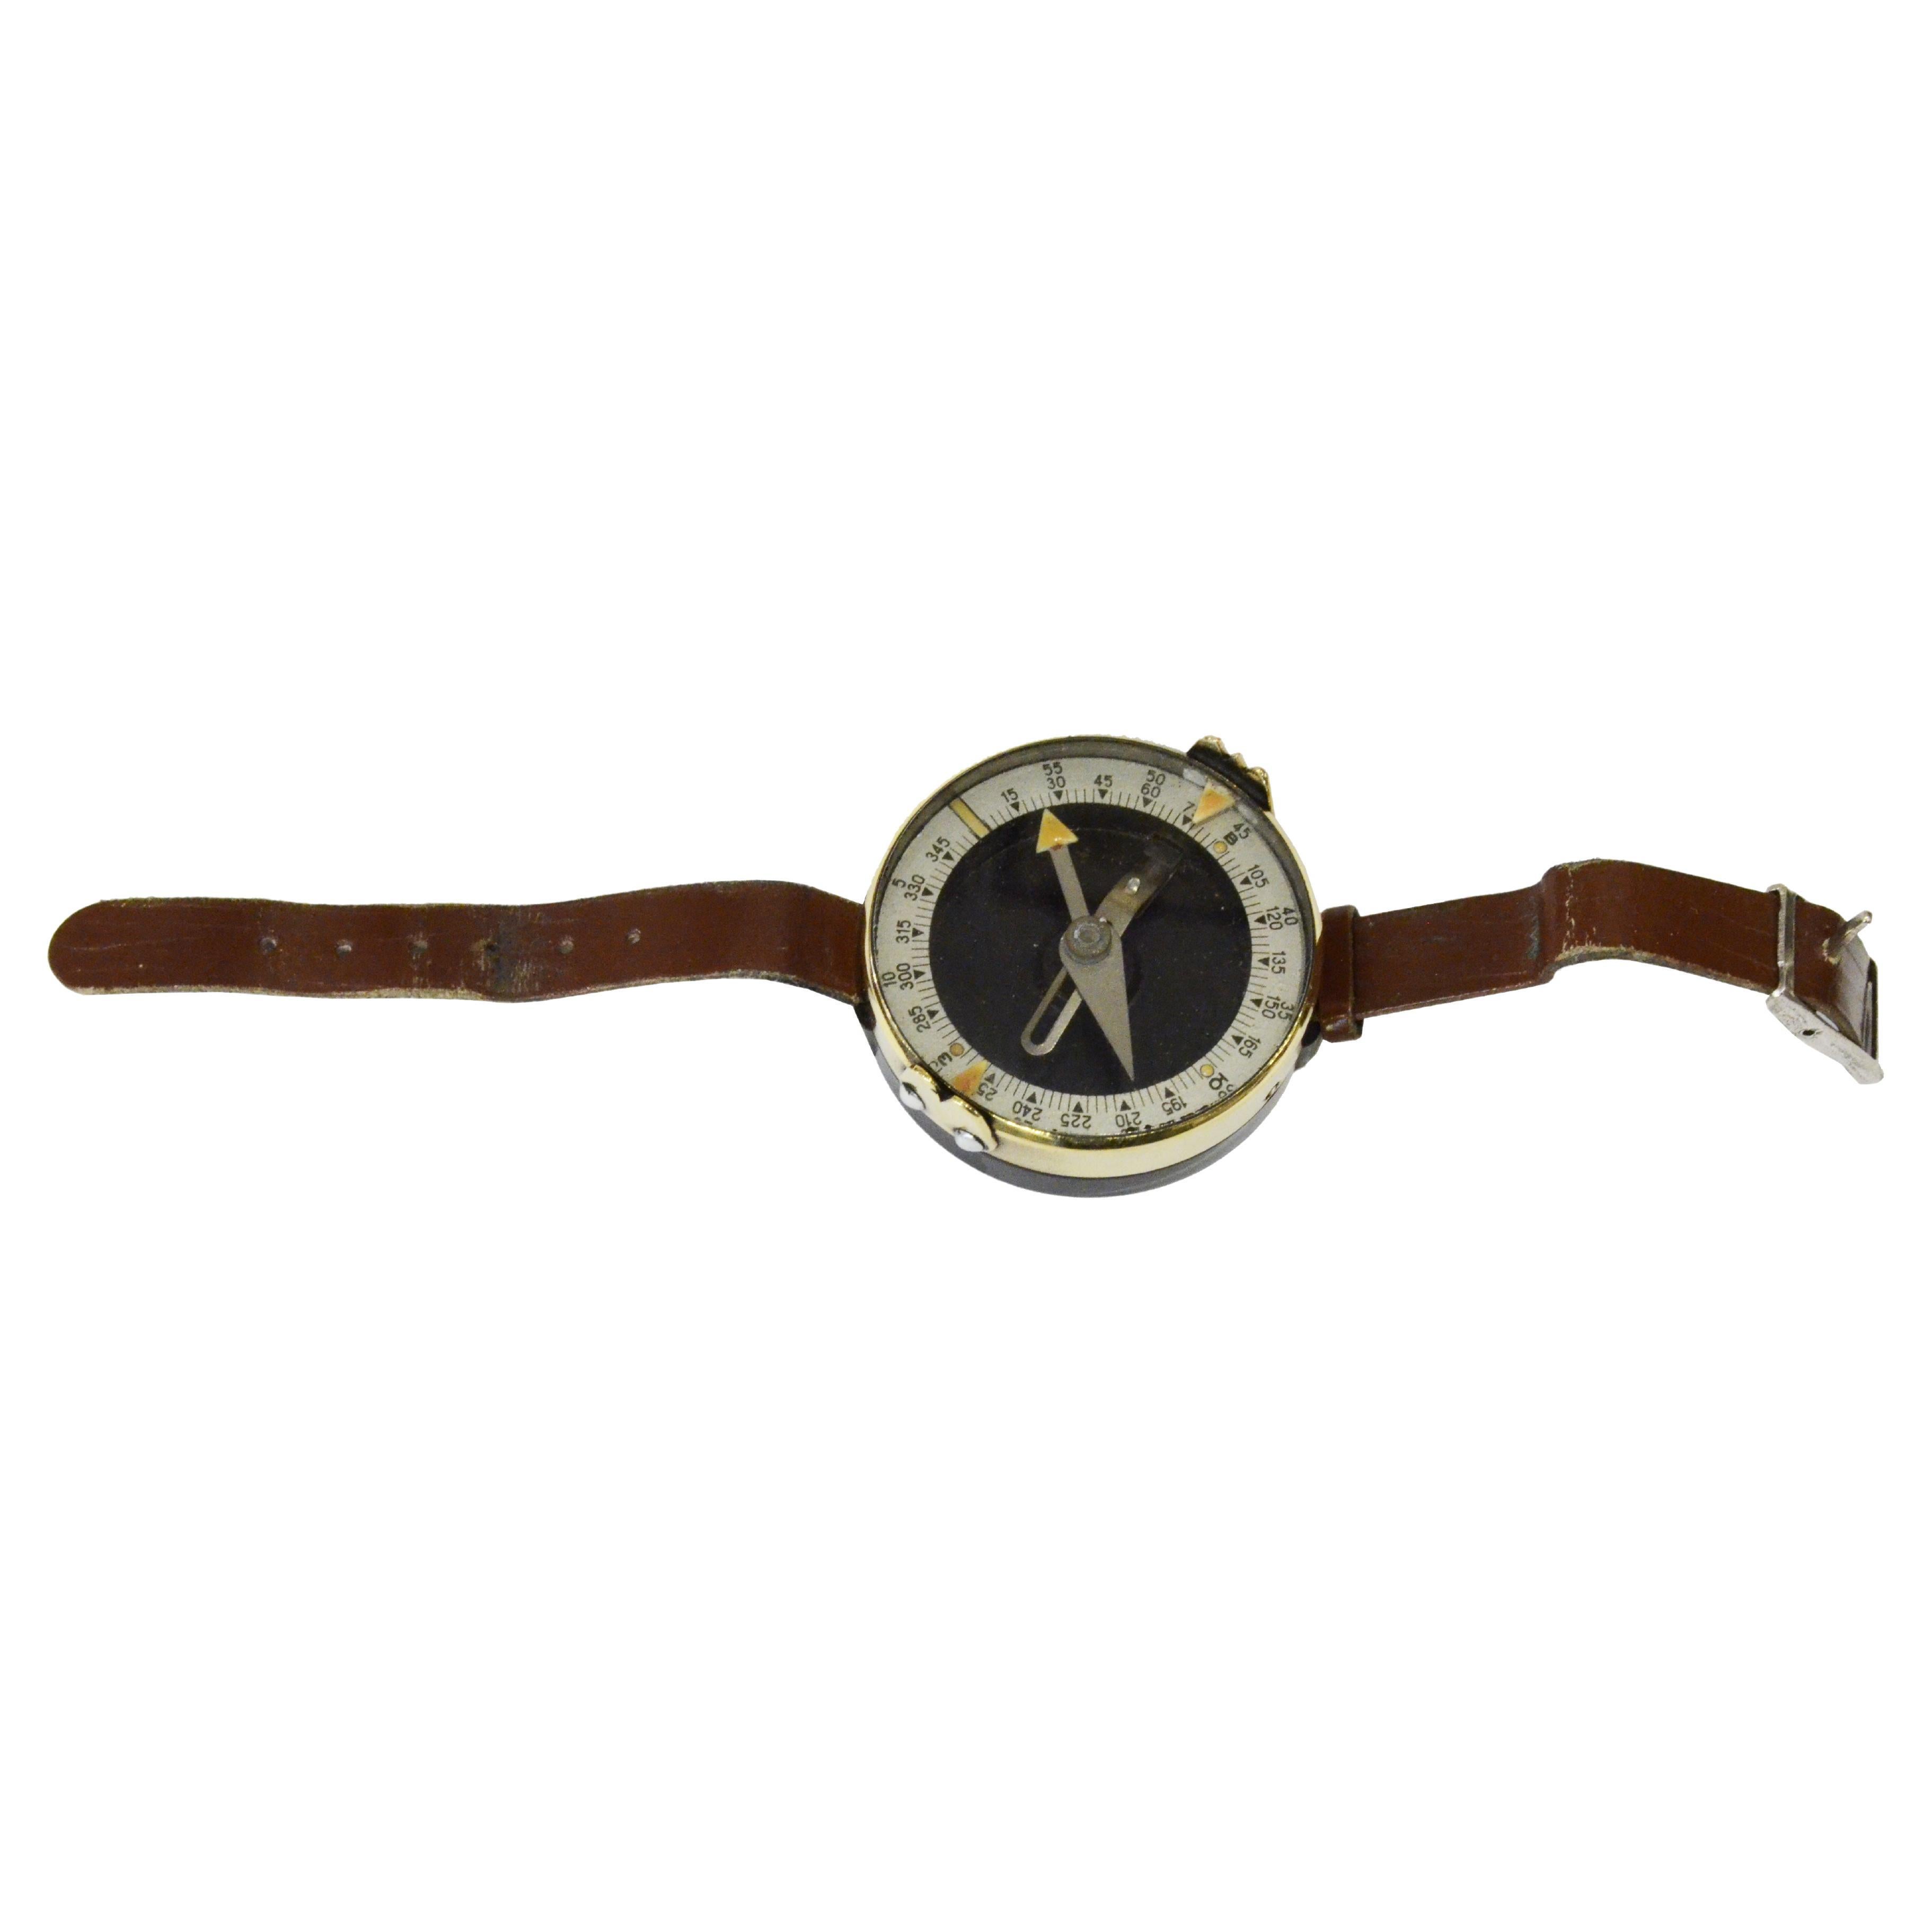 Militärisches Kompass aus den 1930er Jahren in Form einer Uhr, antikes Vermessungsinstrument